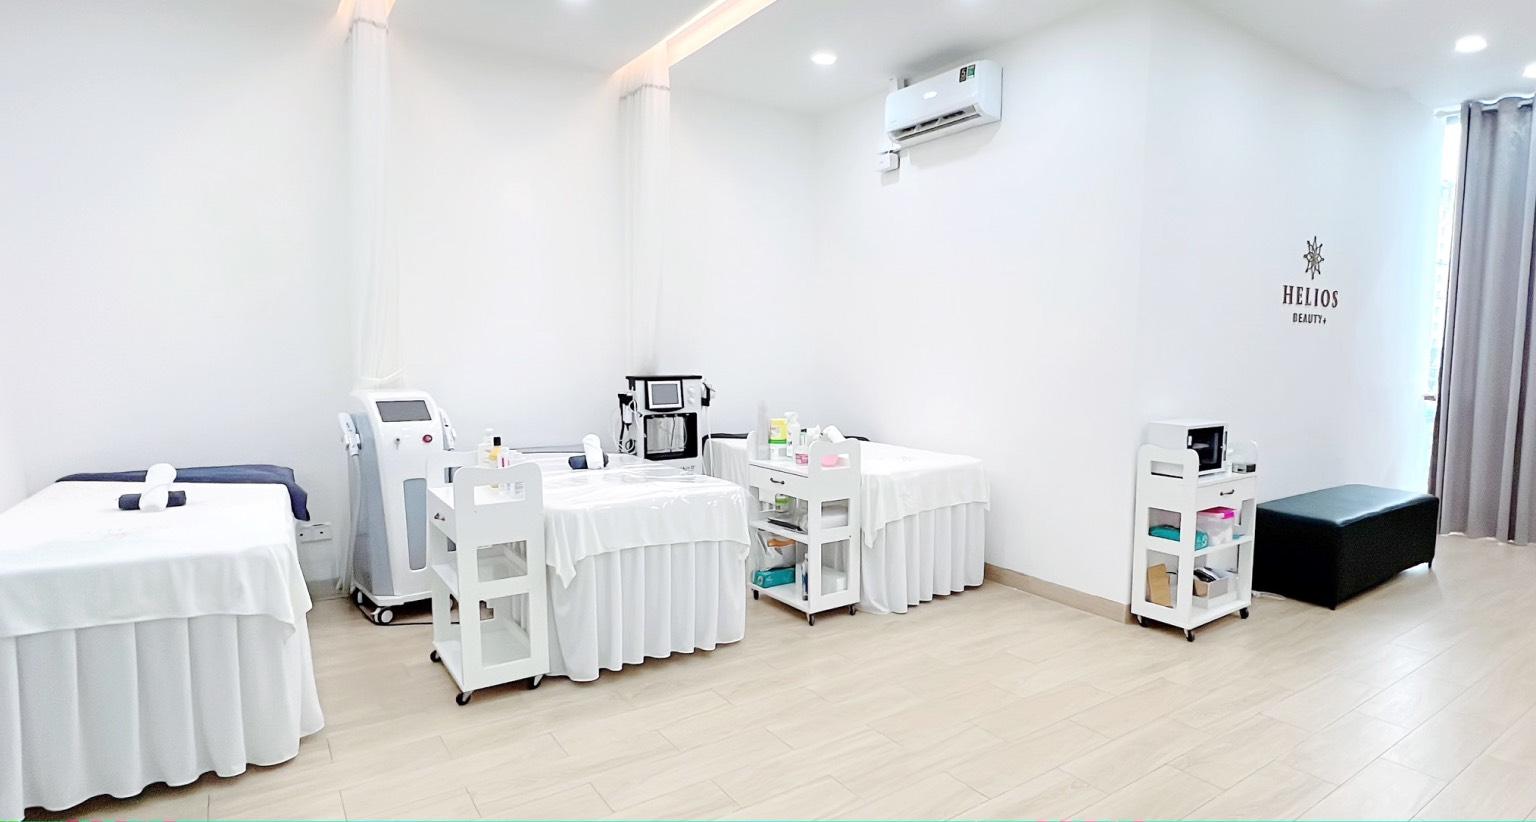 Helios Beauty Sài Gòn với không gian rộng rãi được đầu tư trang thiết bị hiện đại nhằm nâng cao chất lượng phục vụ khách hàng